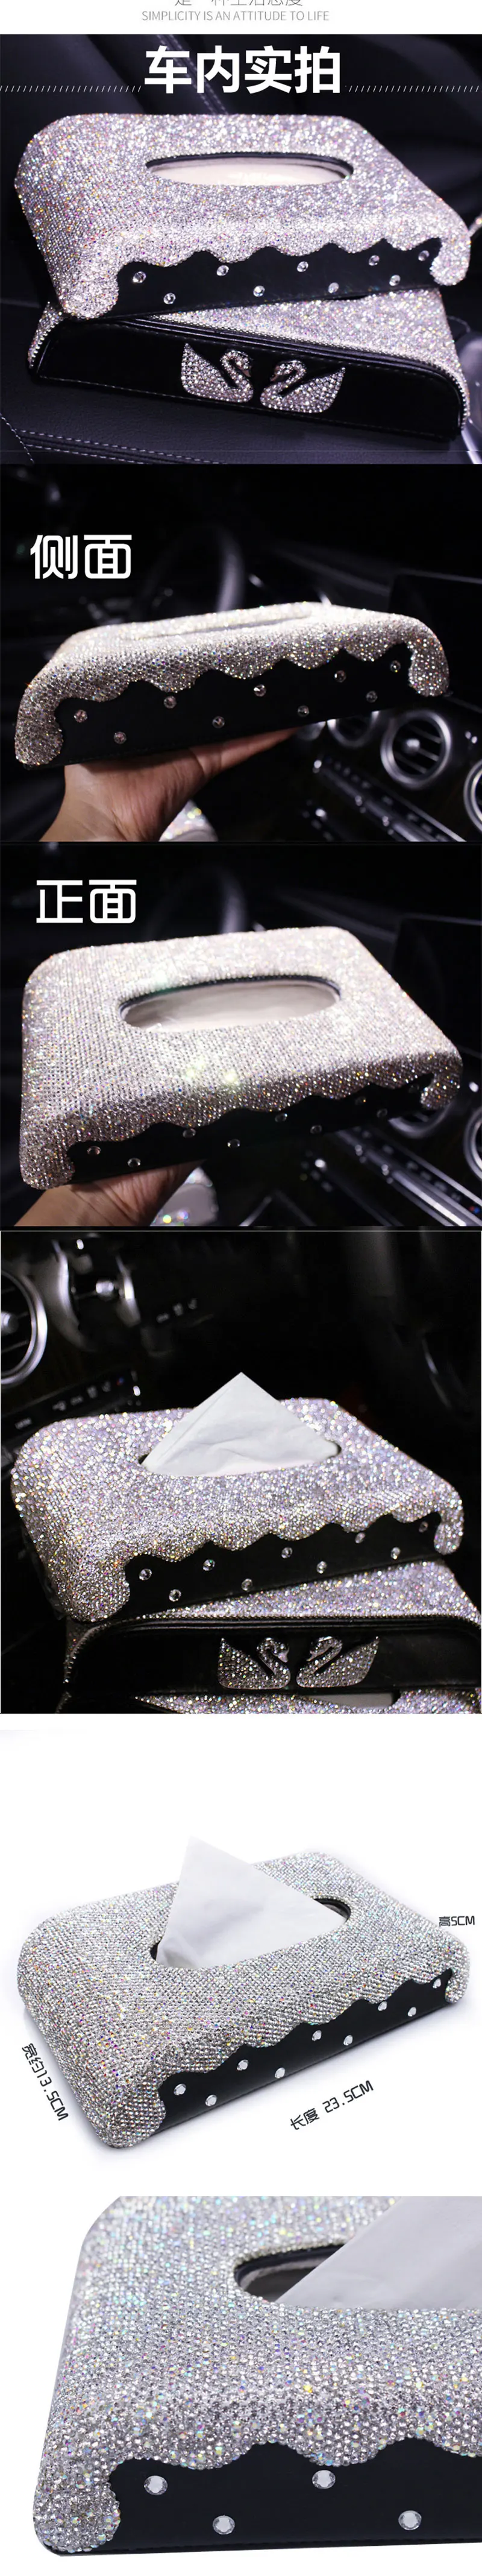 Автомобильные бриллианты звезды коробка для салфеток автомобили лоток автомобили высококачественный Полный алмаз Лебедь Корона Хрустальная салфетница